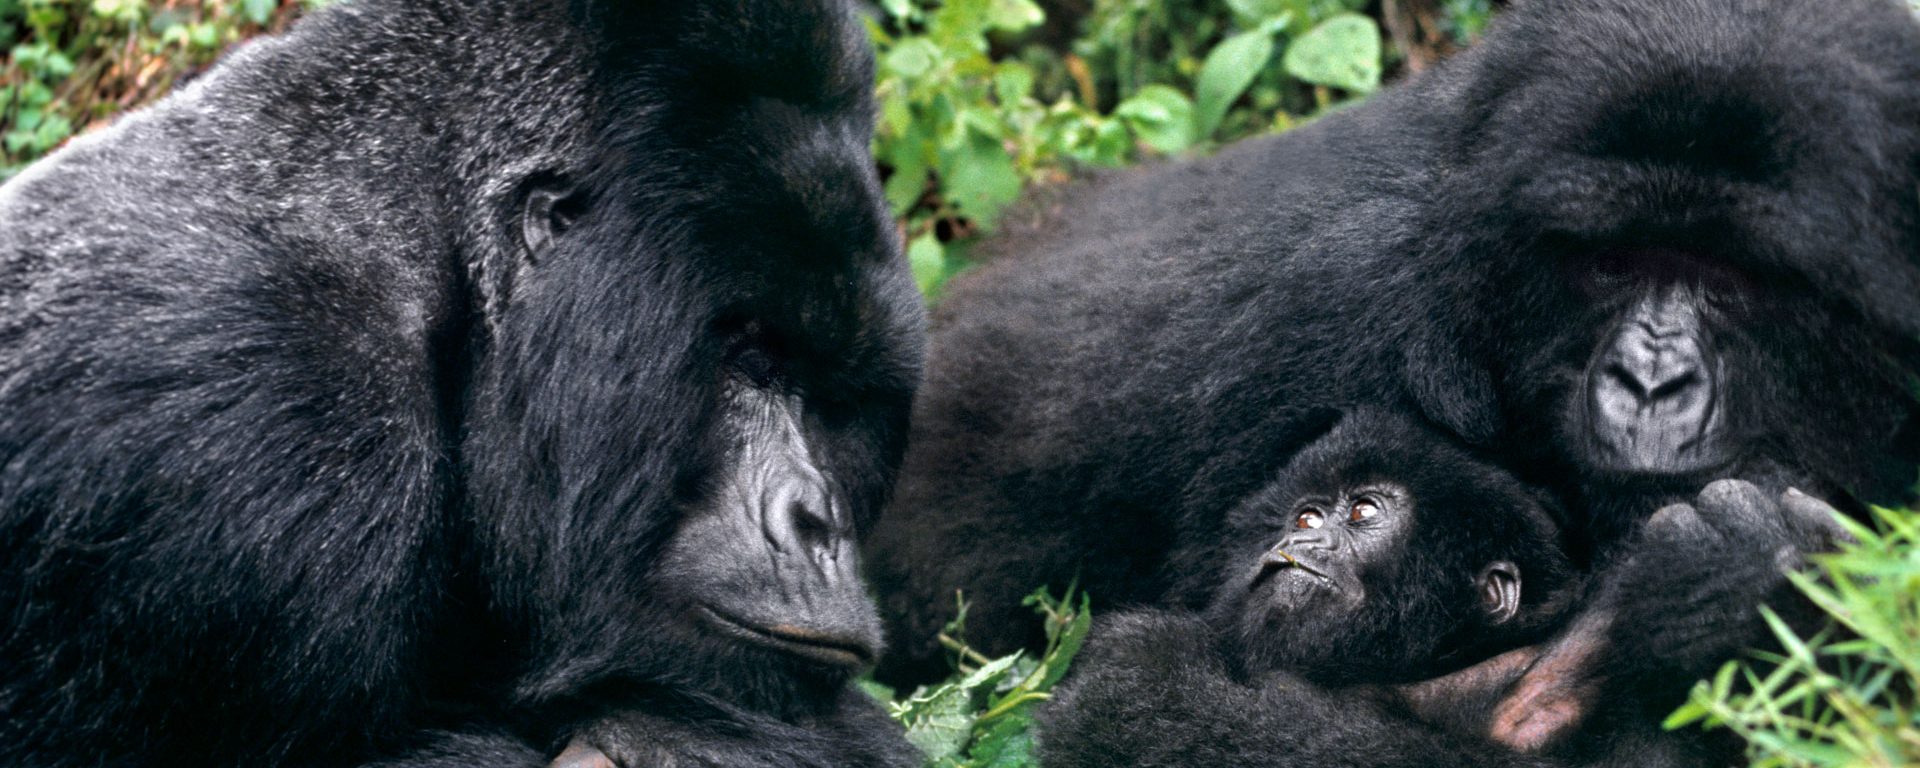 9days-bestofuganda-chimps-gorillasandwildlife-safari